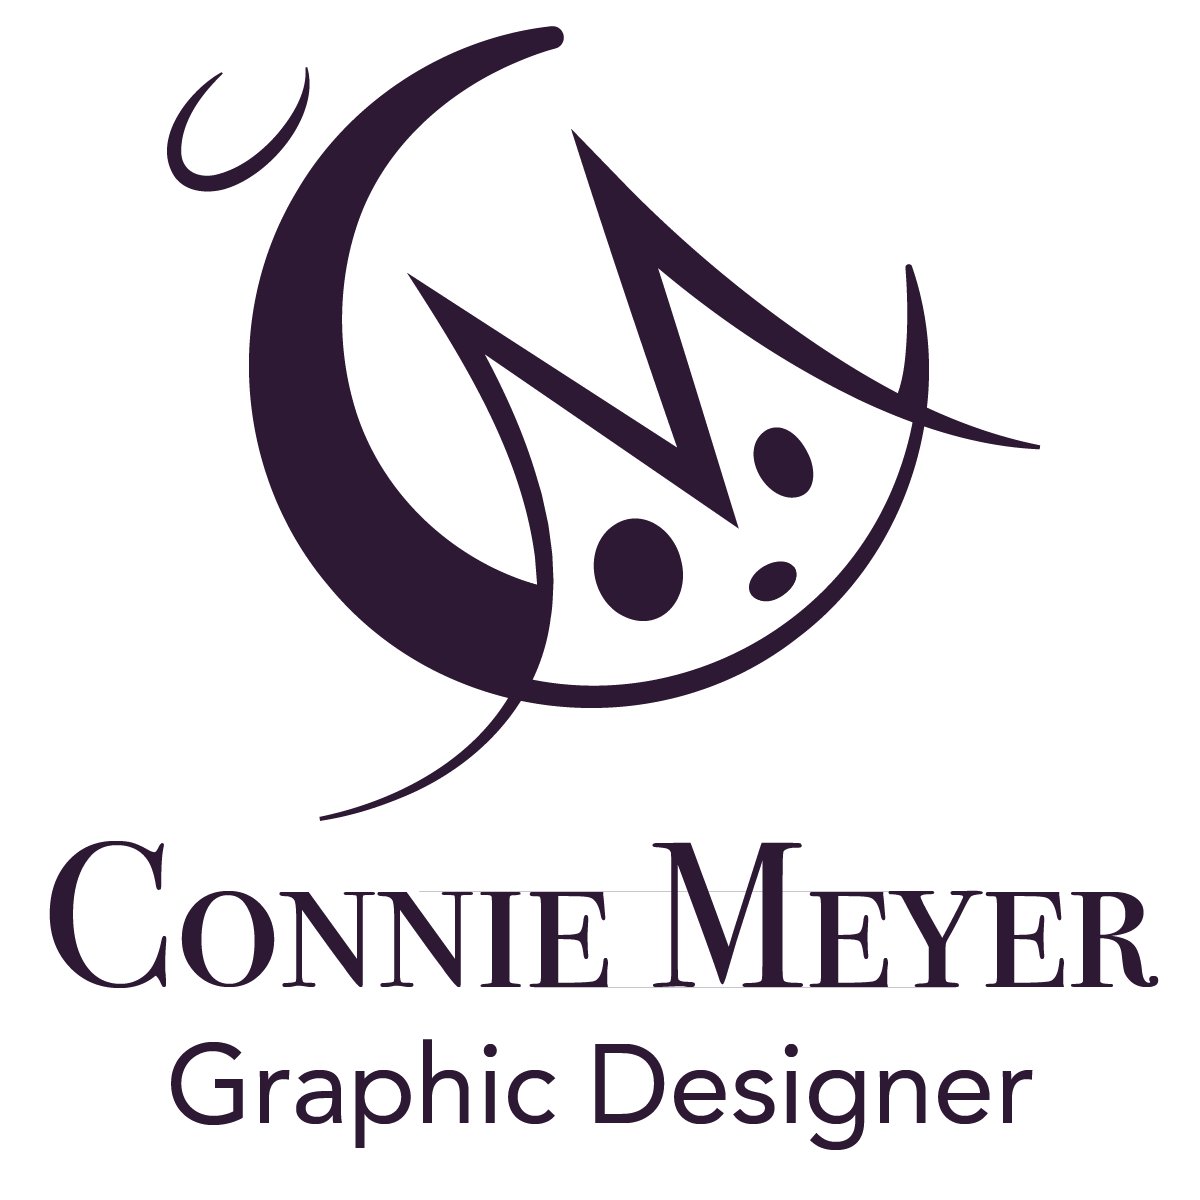 Connie Meyer